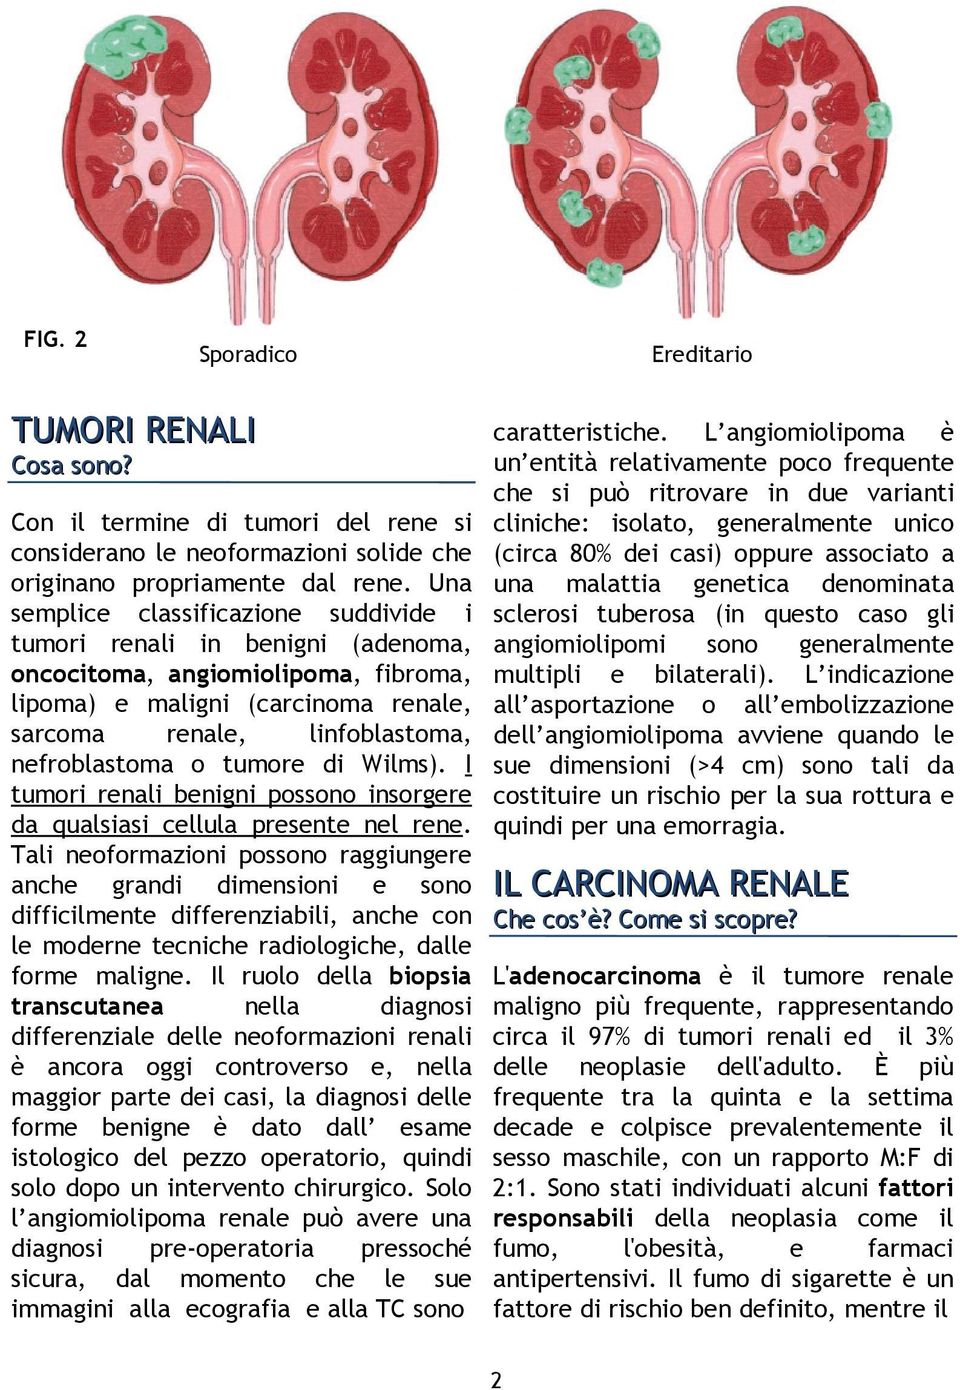 I tumori renali benigni possono insorgere da qualsiasi cellula presente nel rene.